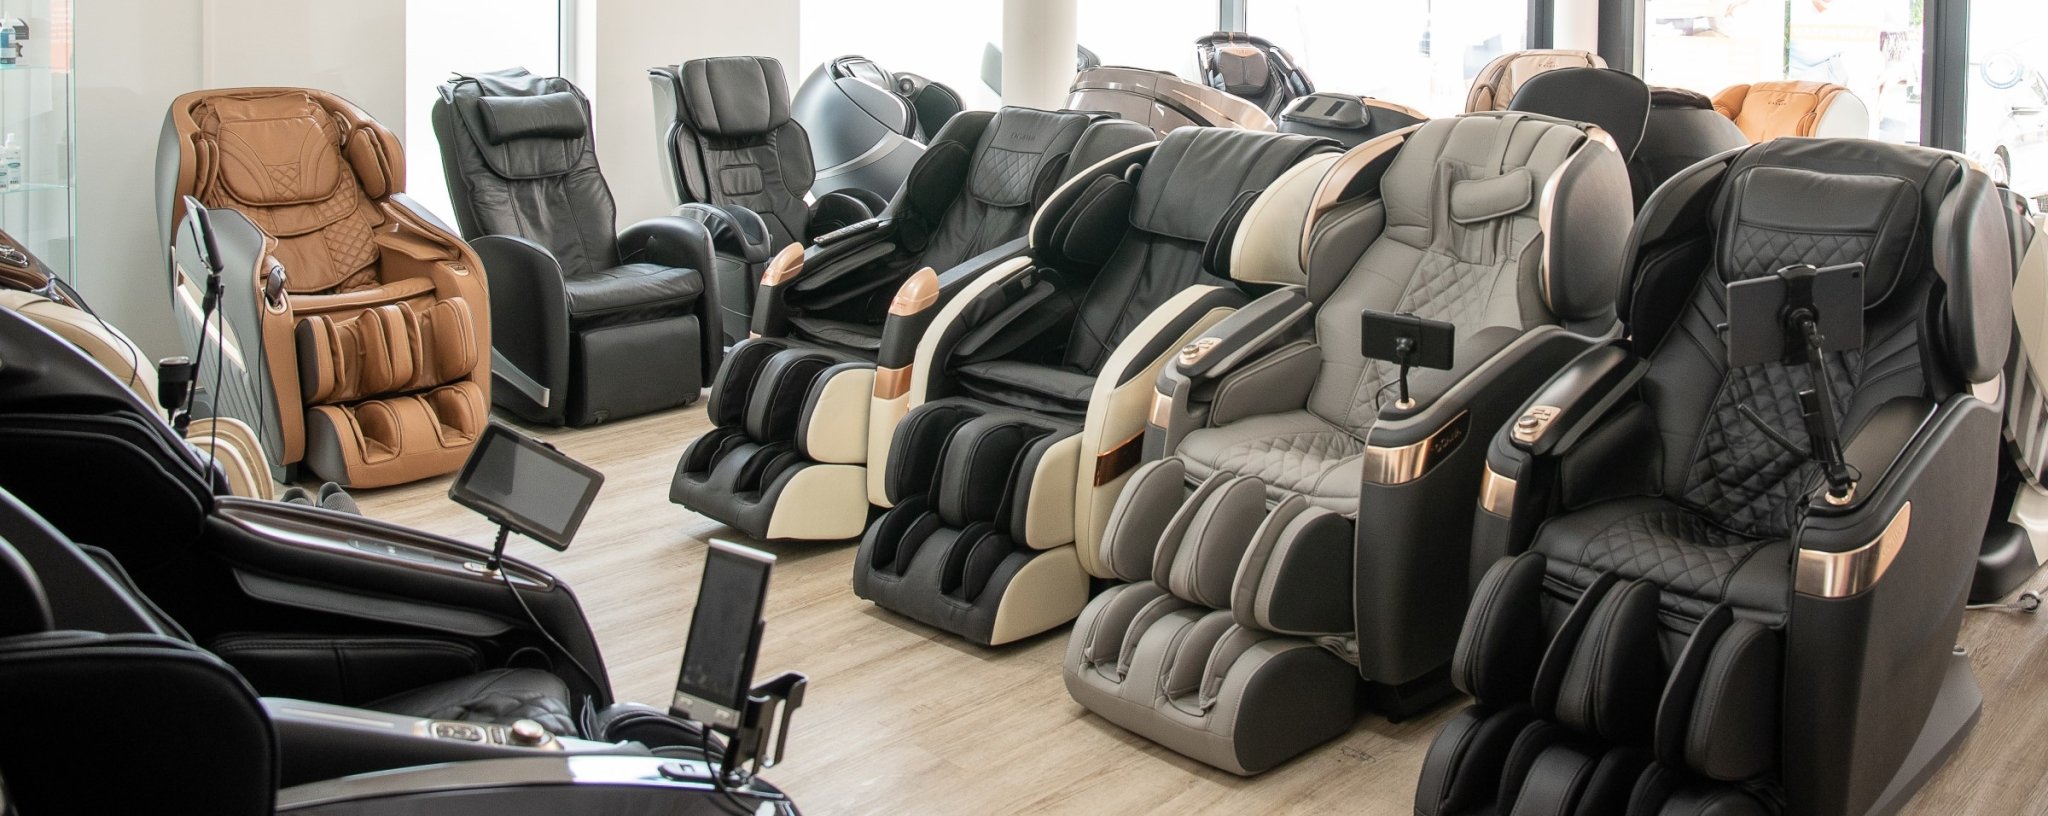 Njemačka i najveća izložba masažnih stolica u Europi